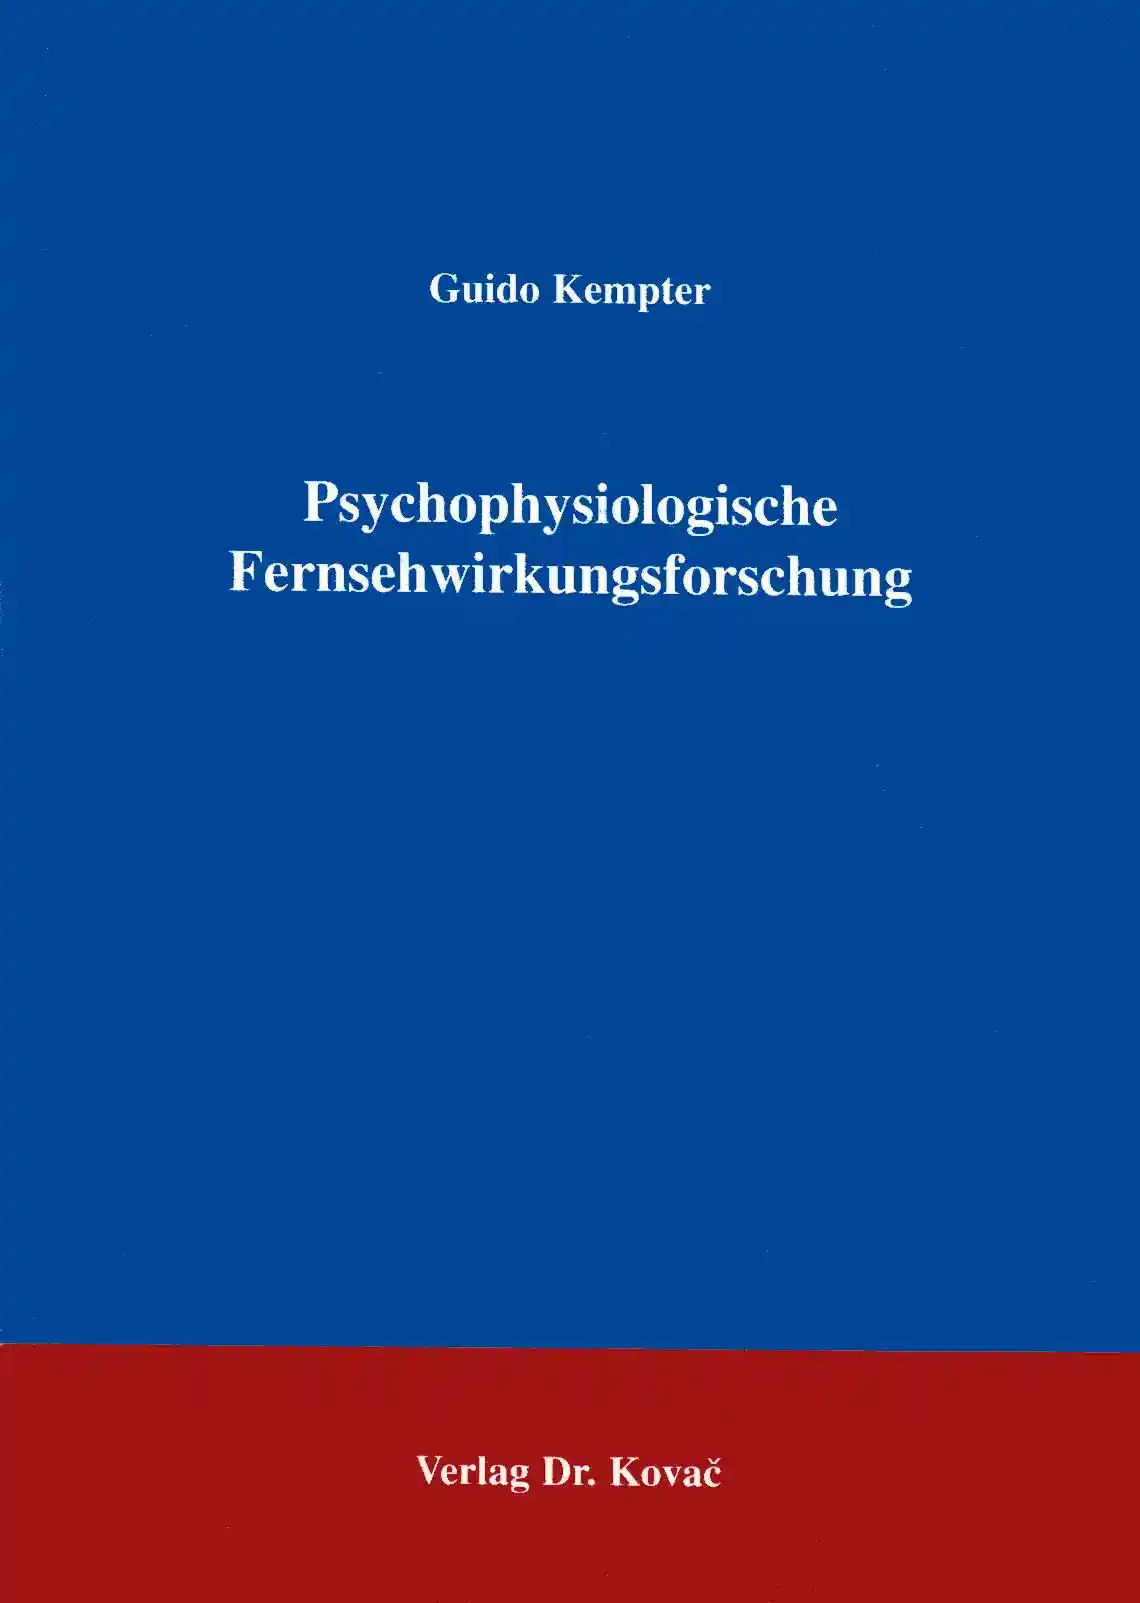 Psychophysiologische Fernsehwirkungsforschung (Forschungsarbeit)